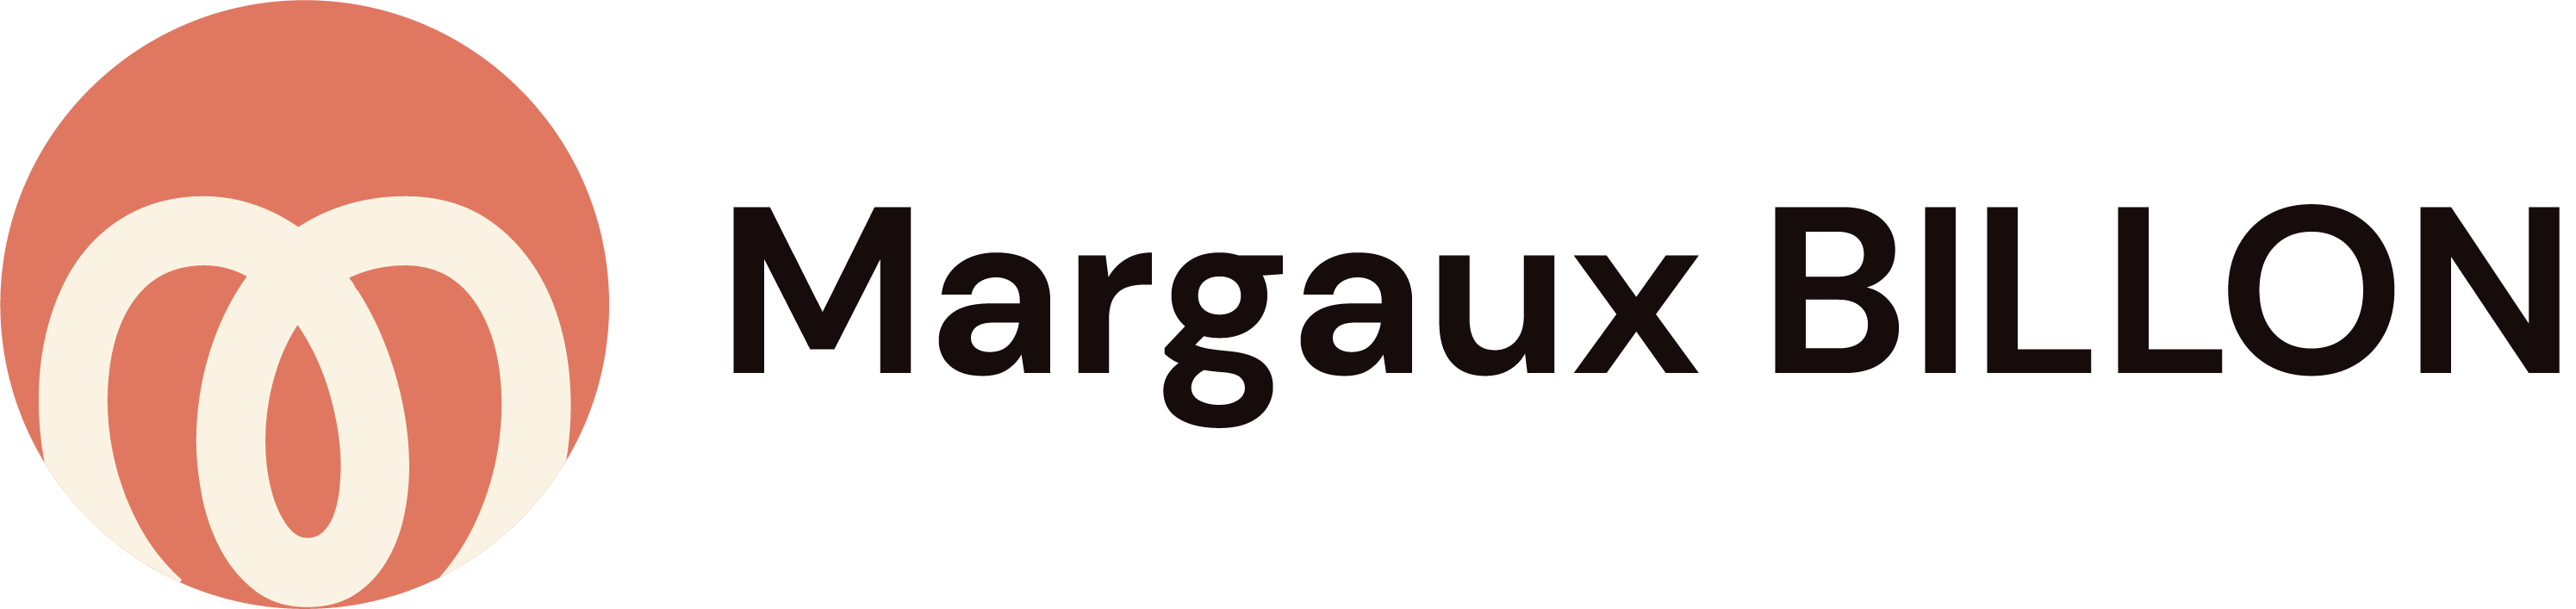 Margaux BILLON - UX/UI Designer